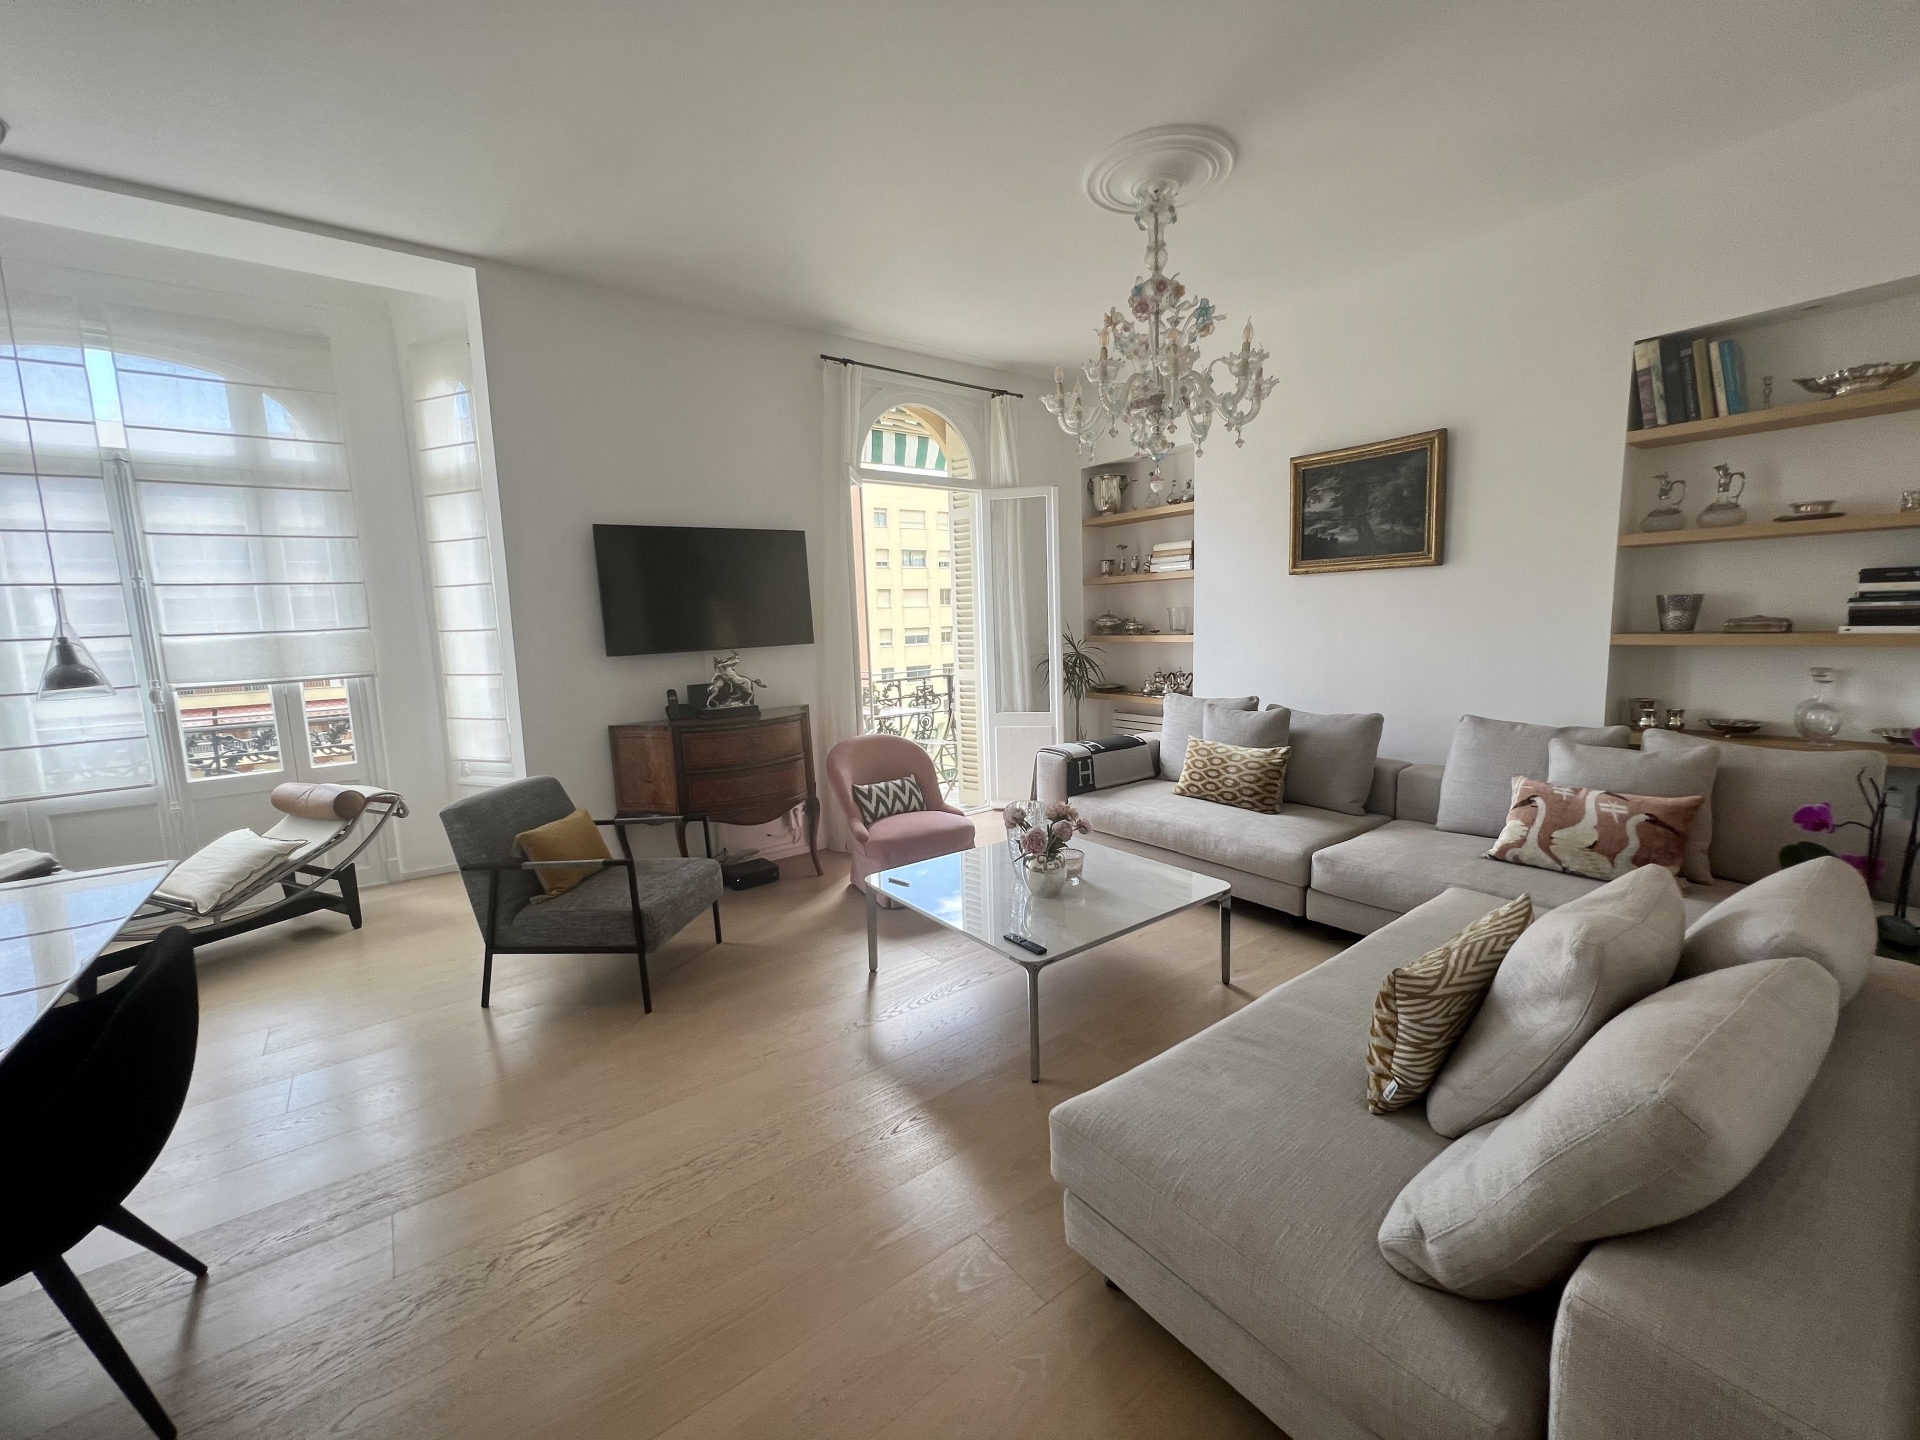 Dotta Appartement de 5 pieces a vendre - RADIEUSE - La Rousse - Monaco - imgimage00010